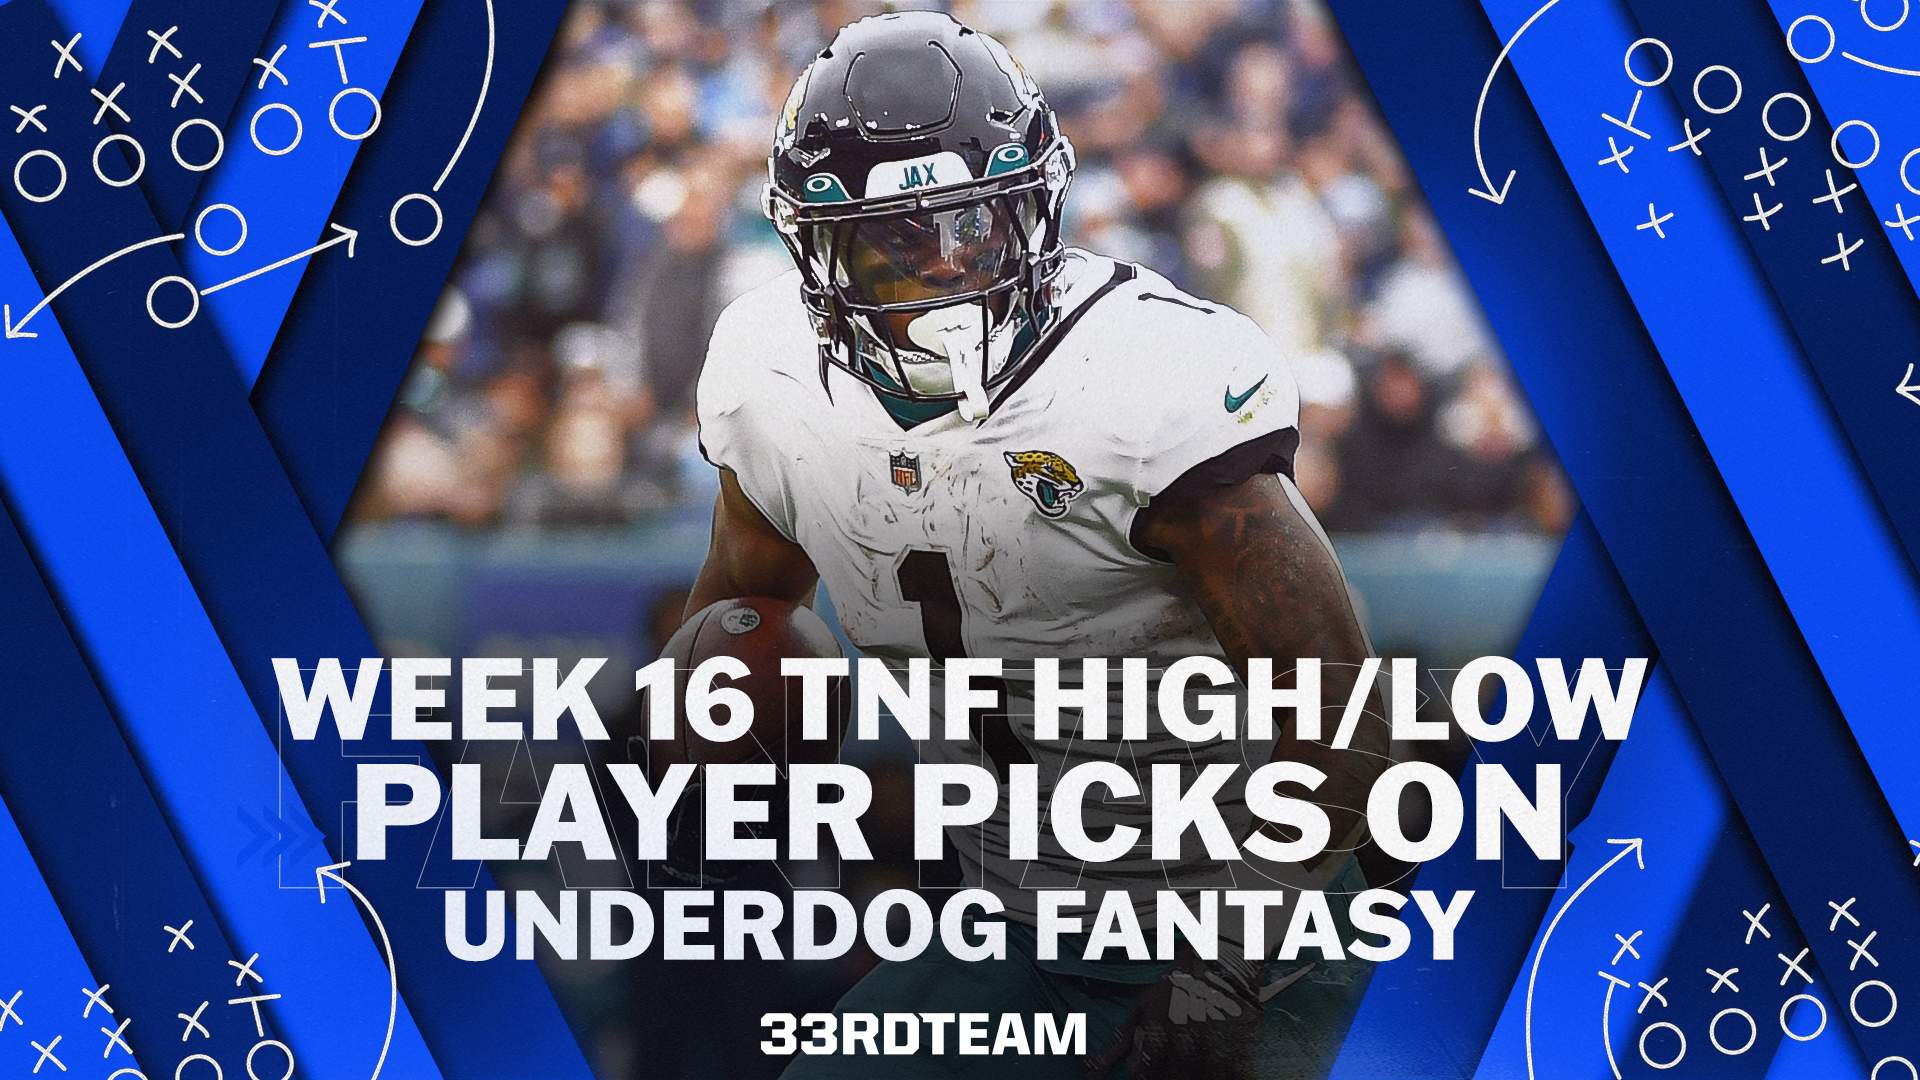 NFL Week 16 Underdog TNF High/Low Player Picks for Jets vs. Jaguars